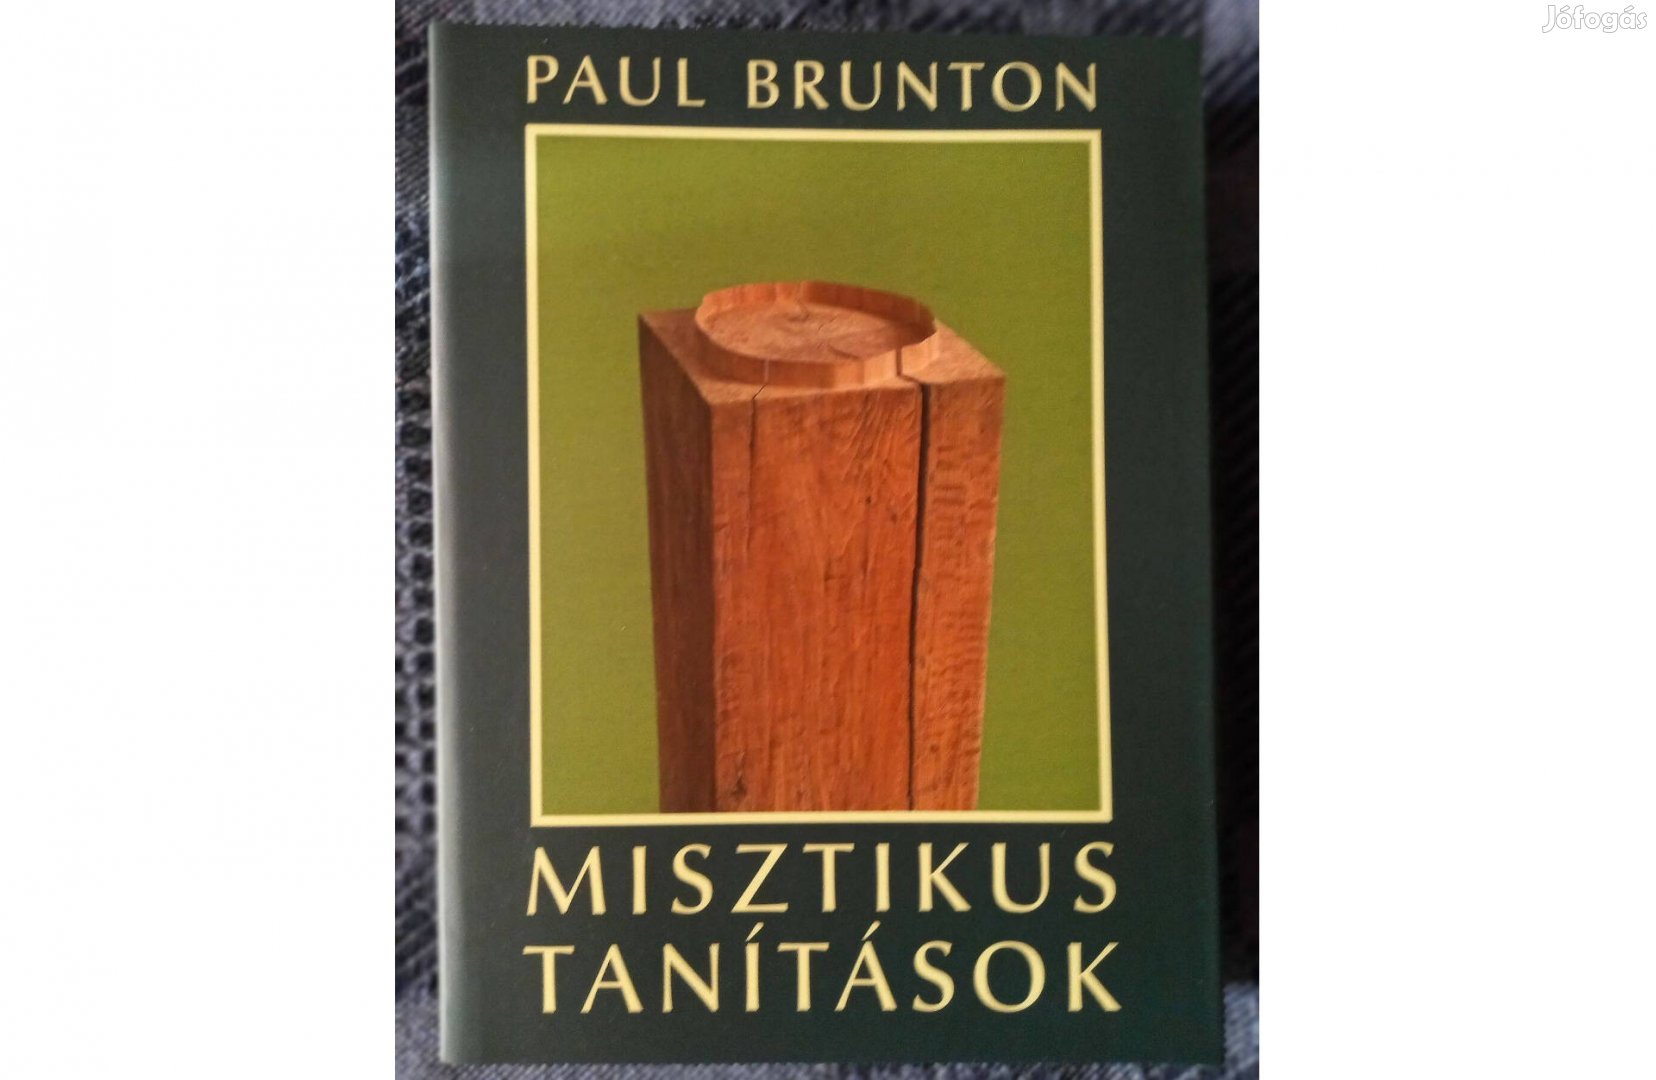 Paul Brunton: Misztikus tanítások. c. könyv szép állapotban eladó